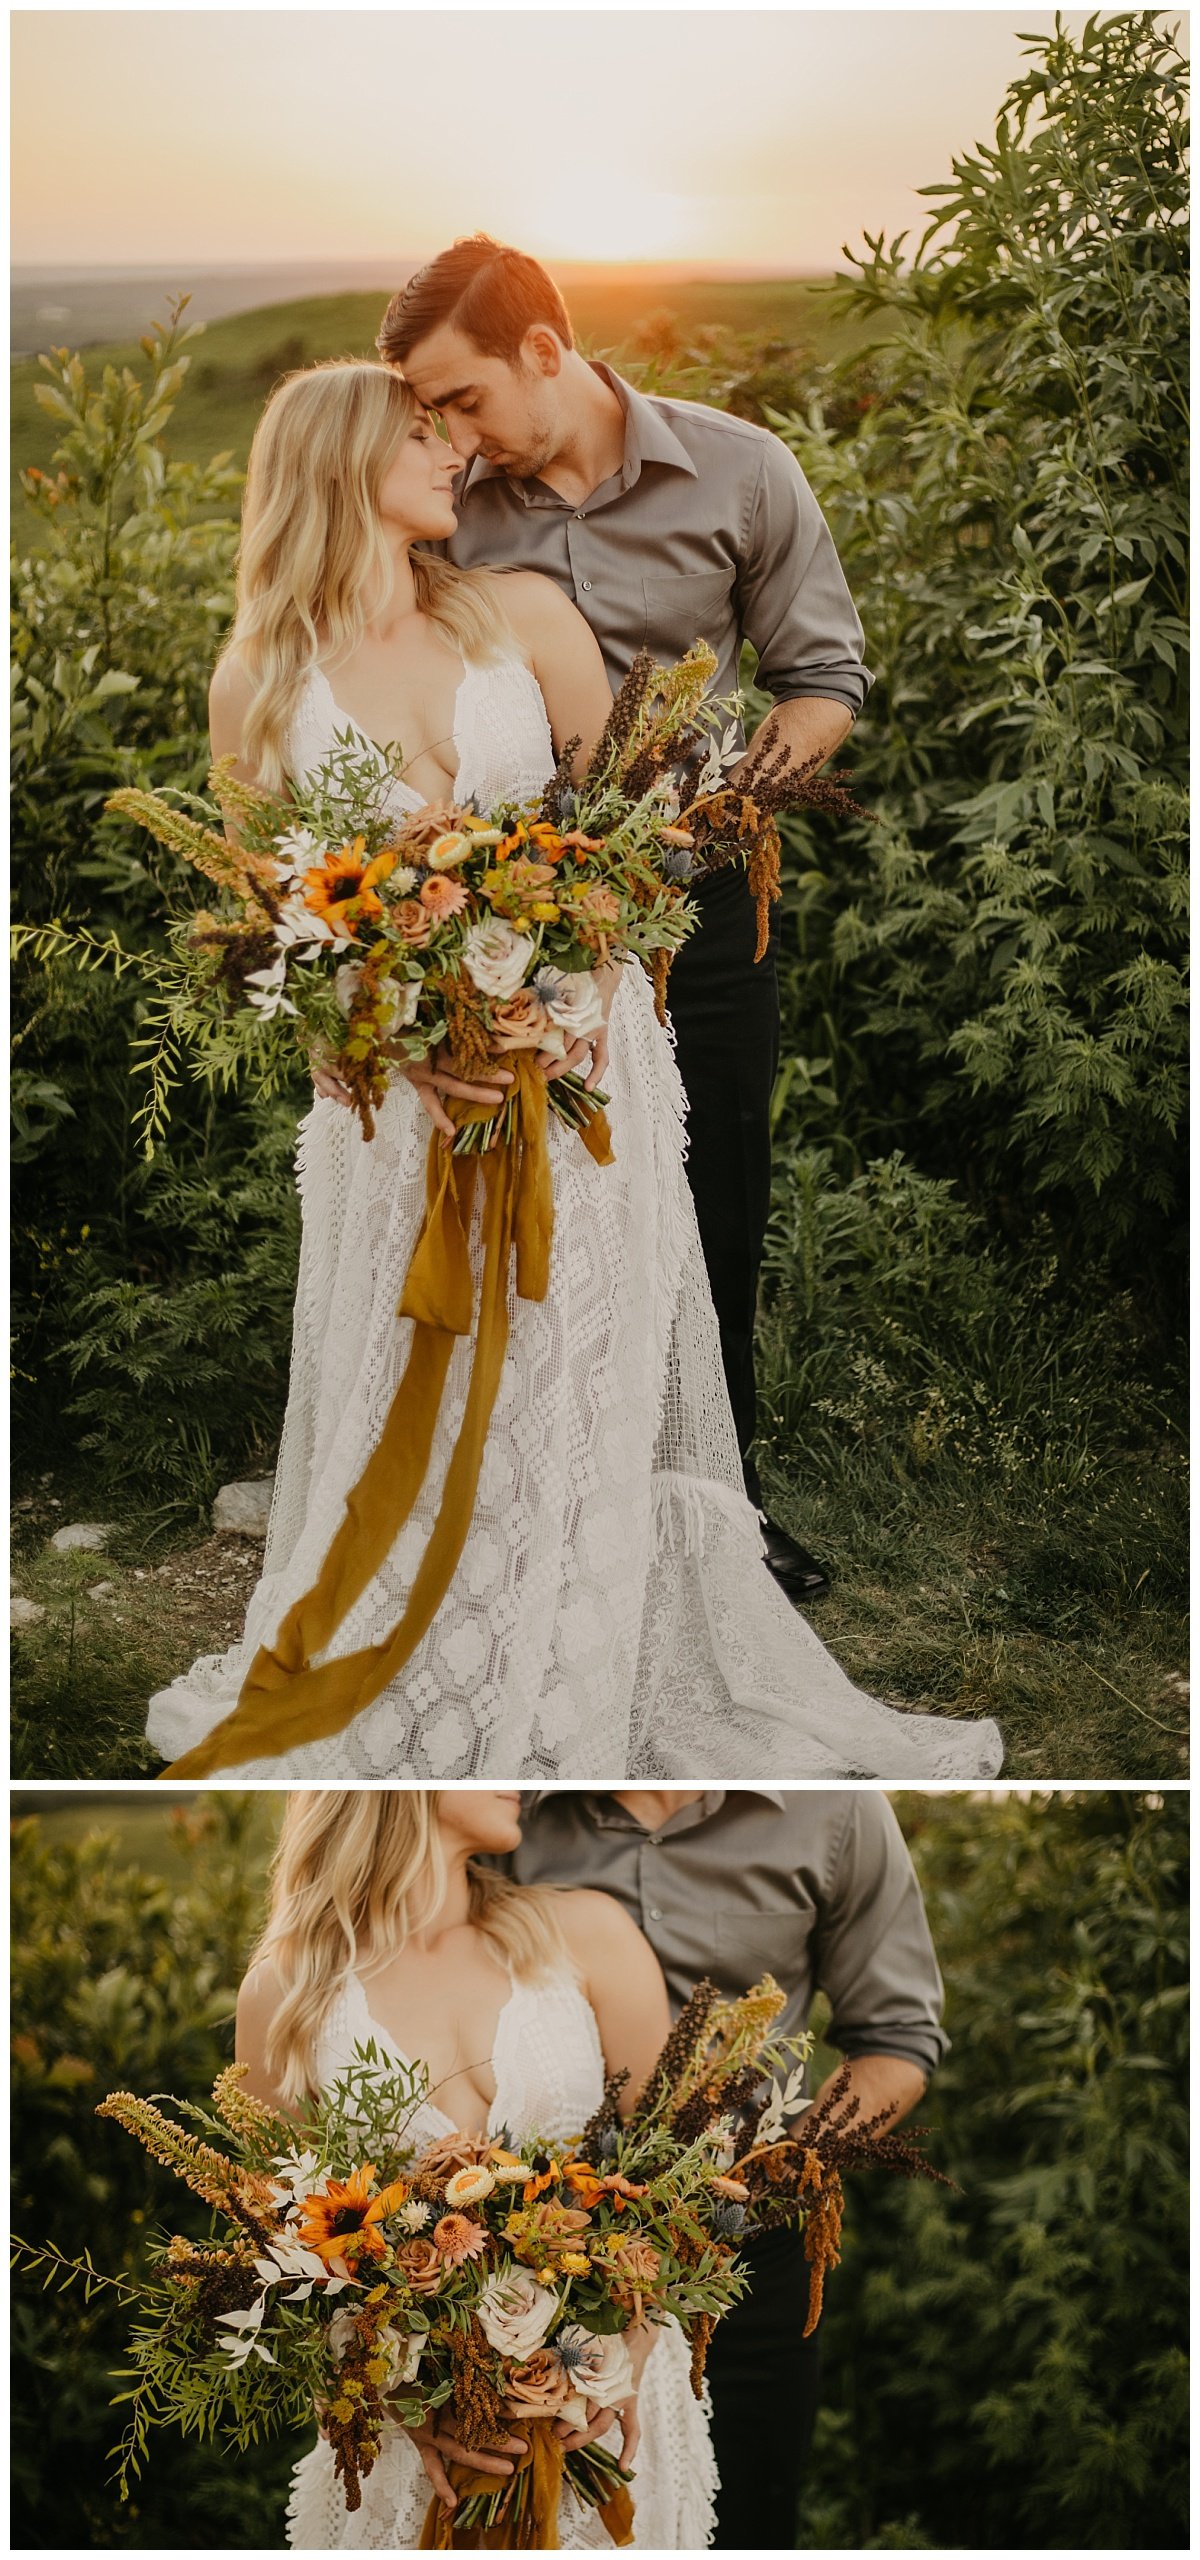 Flint+Hills+Elopement+_+Kansas+City+Wedding+Photographer+_+Outdoor+Wedding+_+Reclamation+Wedding+Dress+_+Vintage+Wedding+Dress_+Colorado+Elopement.jpeg